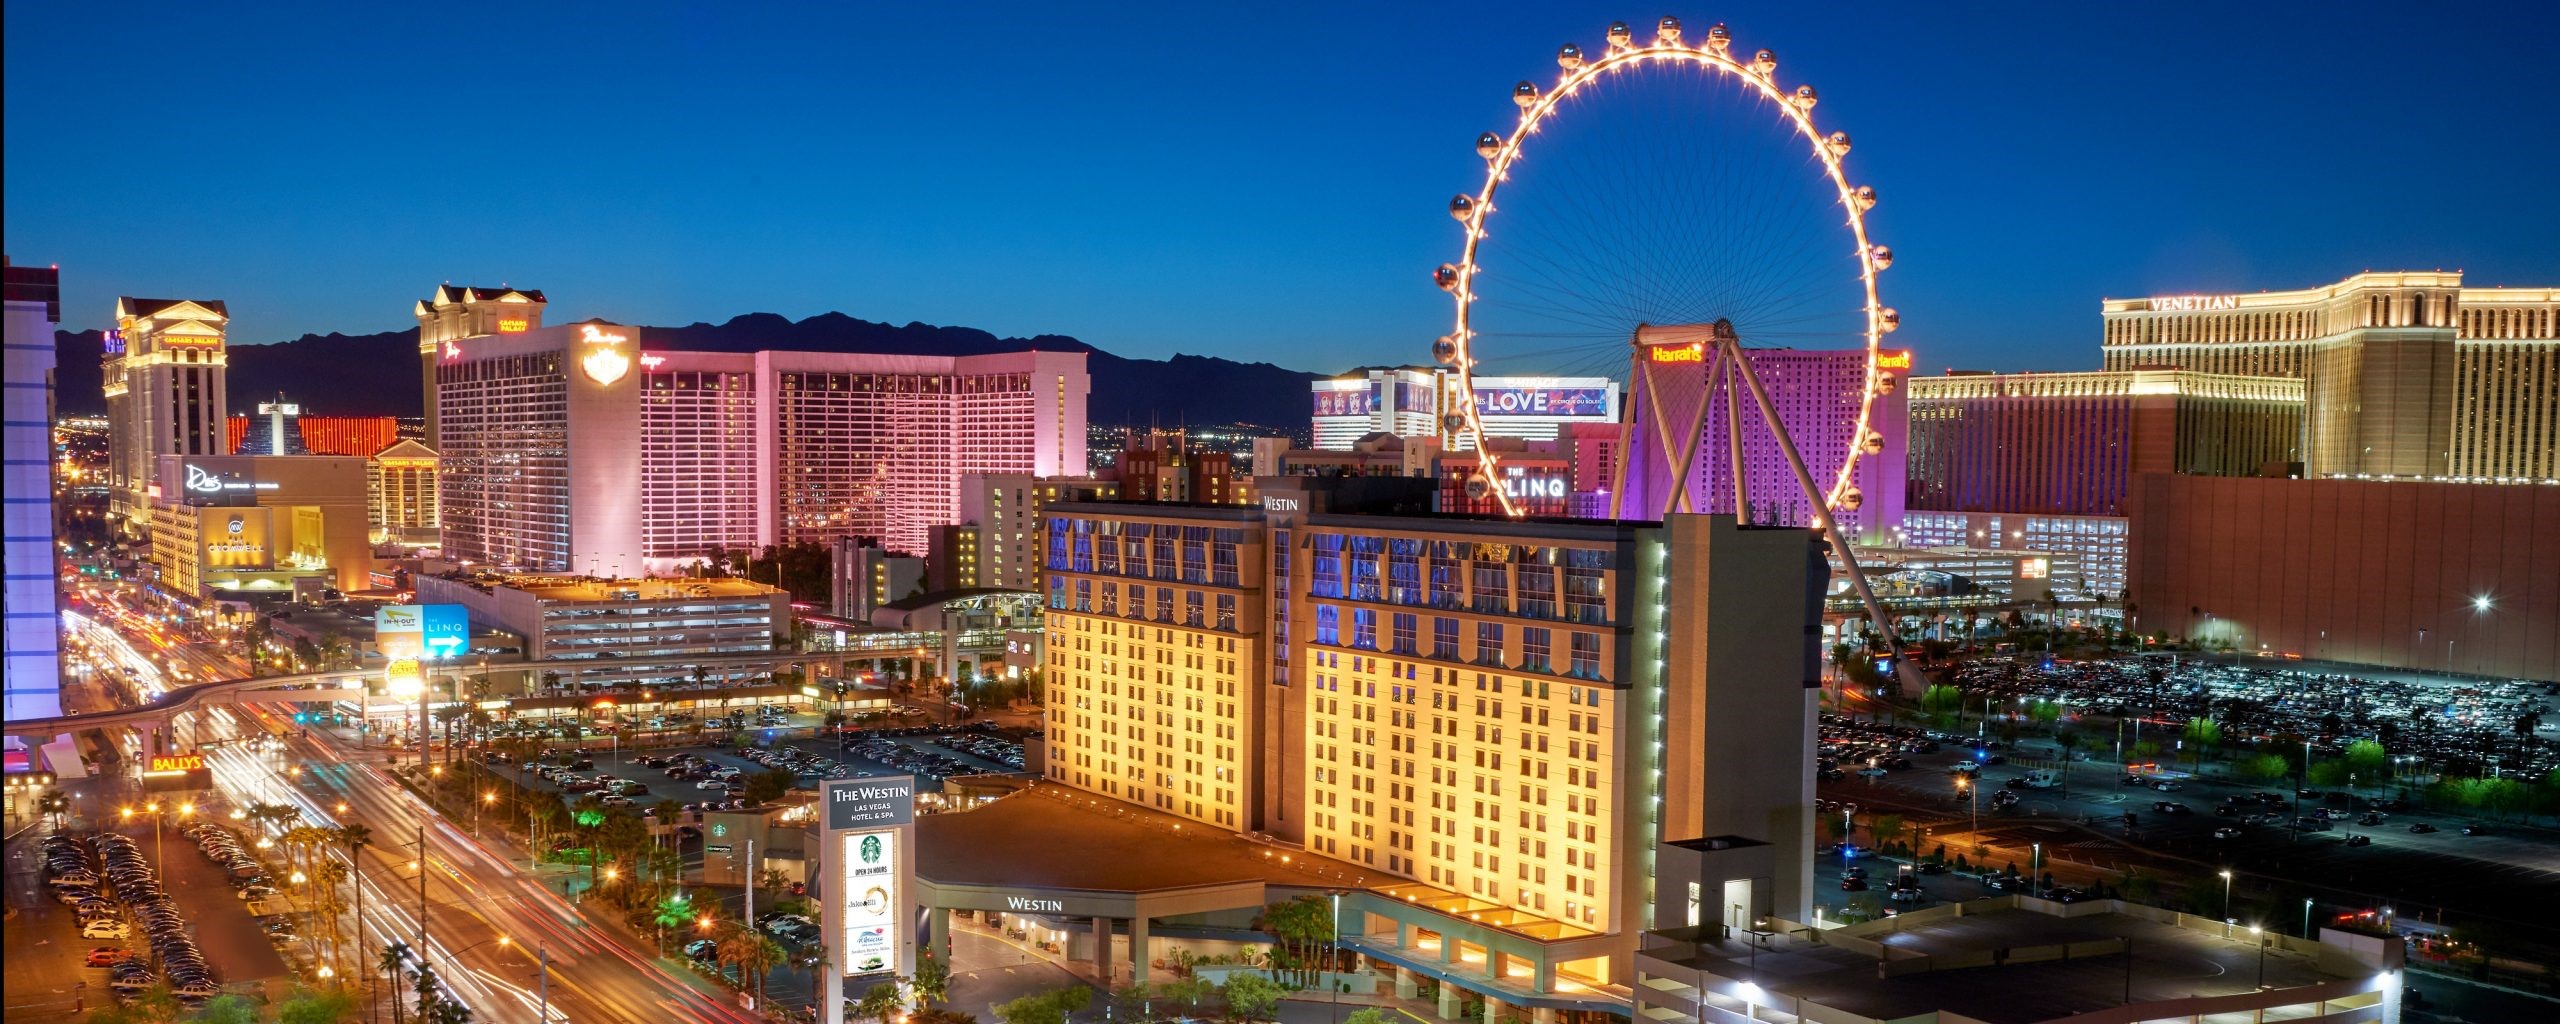 ¿Que llevar a un viaje a Las Vegas?